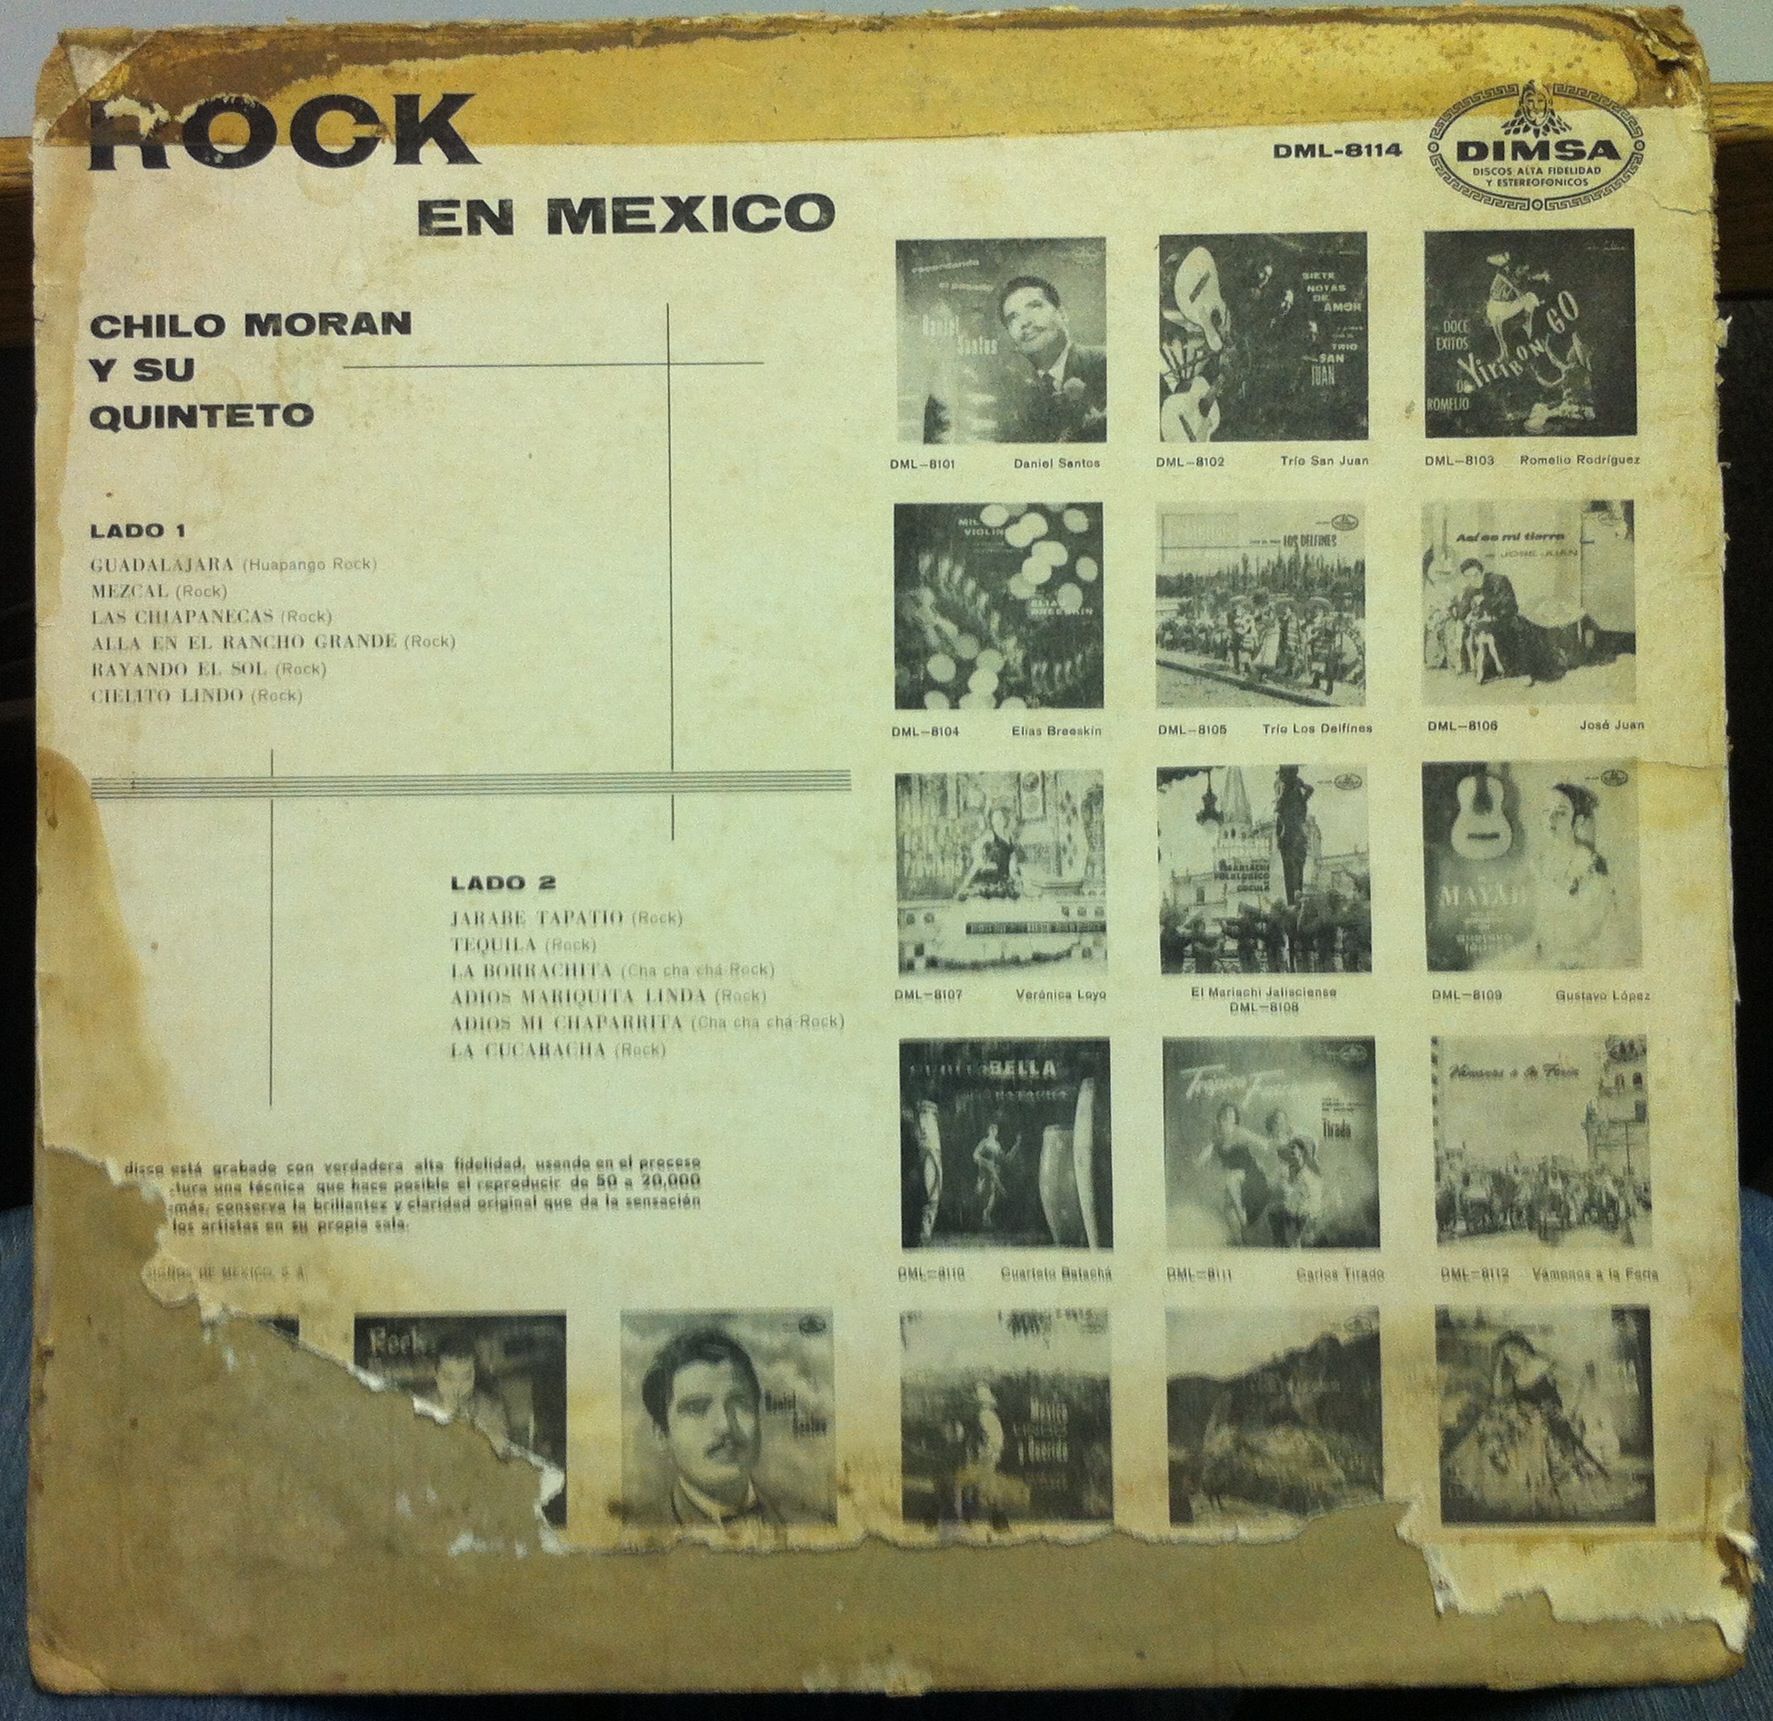 Chilo Moran Rock En Mexico LP VG DML 8114 Vinyl Mexico RARE Record 